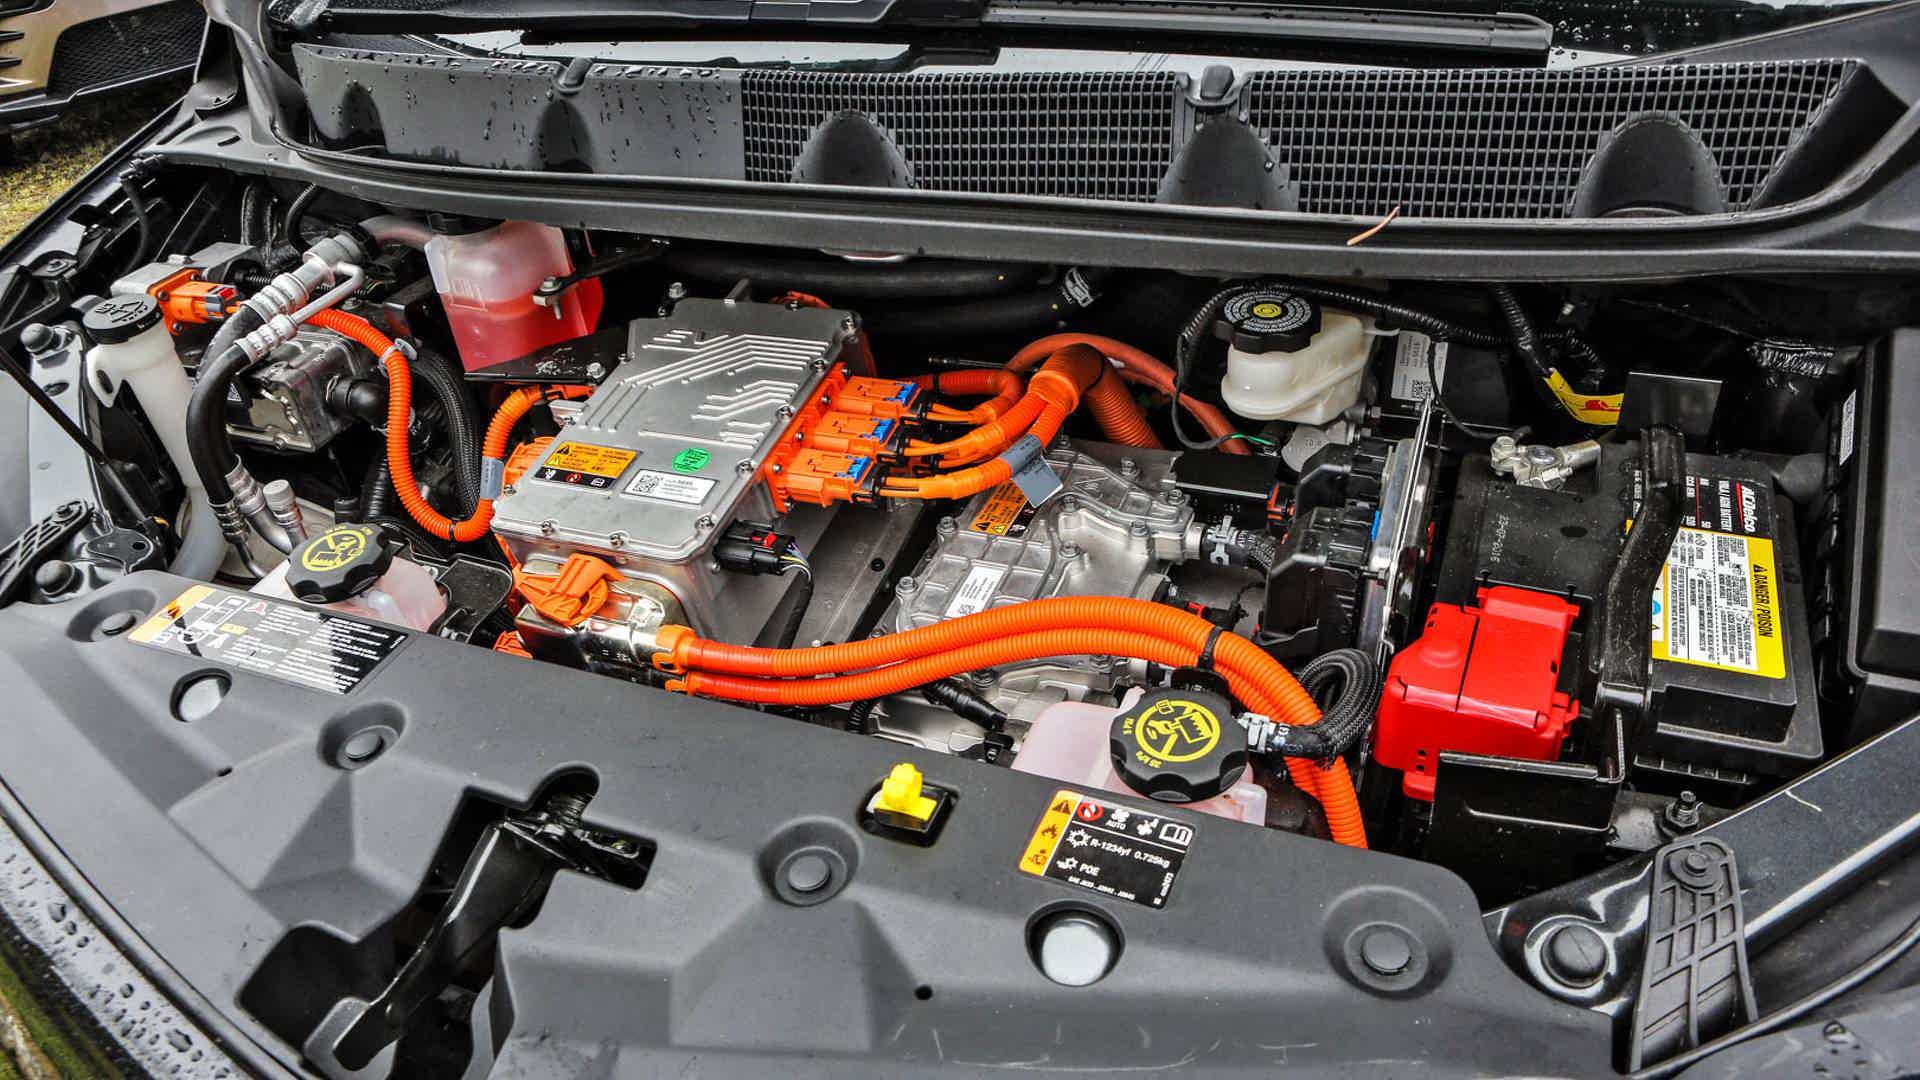 Motor do Chevrolet Bolt agrada e surpreende ao mesmo tempo